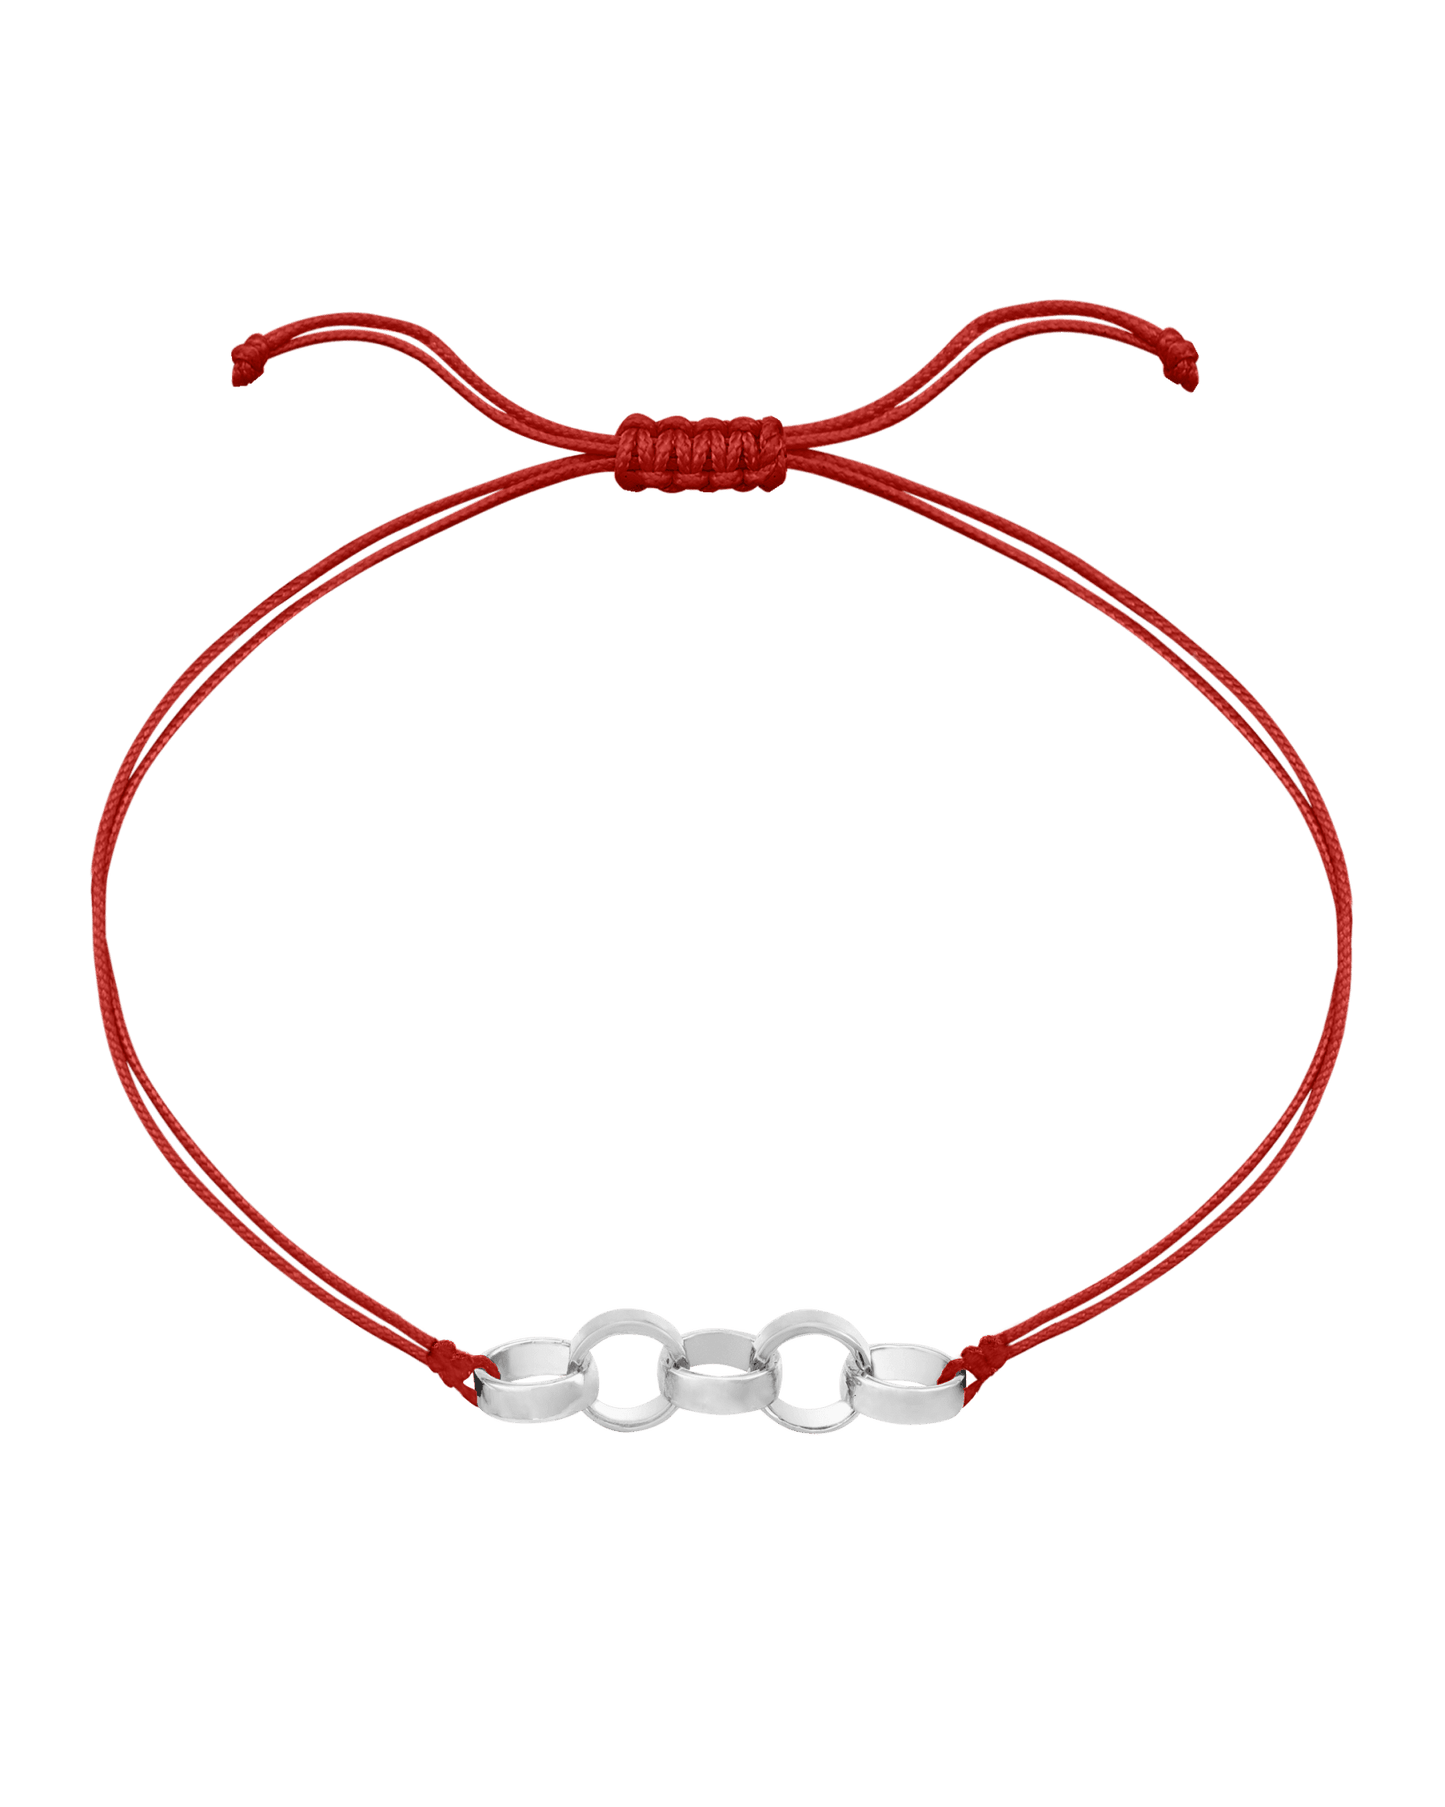 Engravable Links of Love - 925 Sterling Silver Bracelets magal-dev 5 Red 